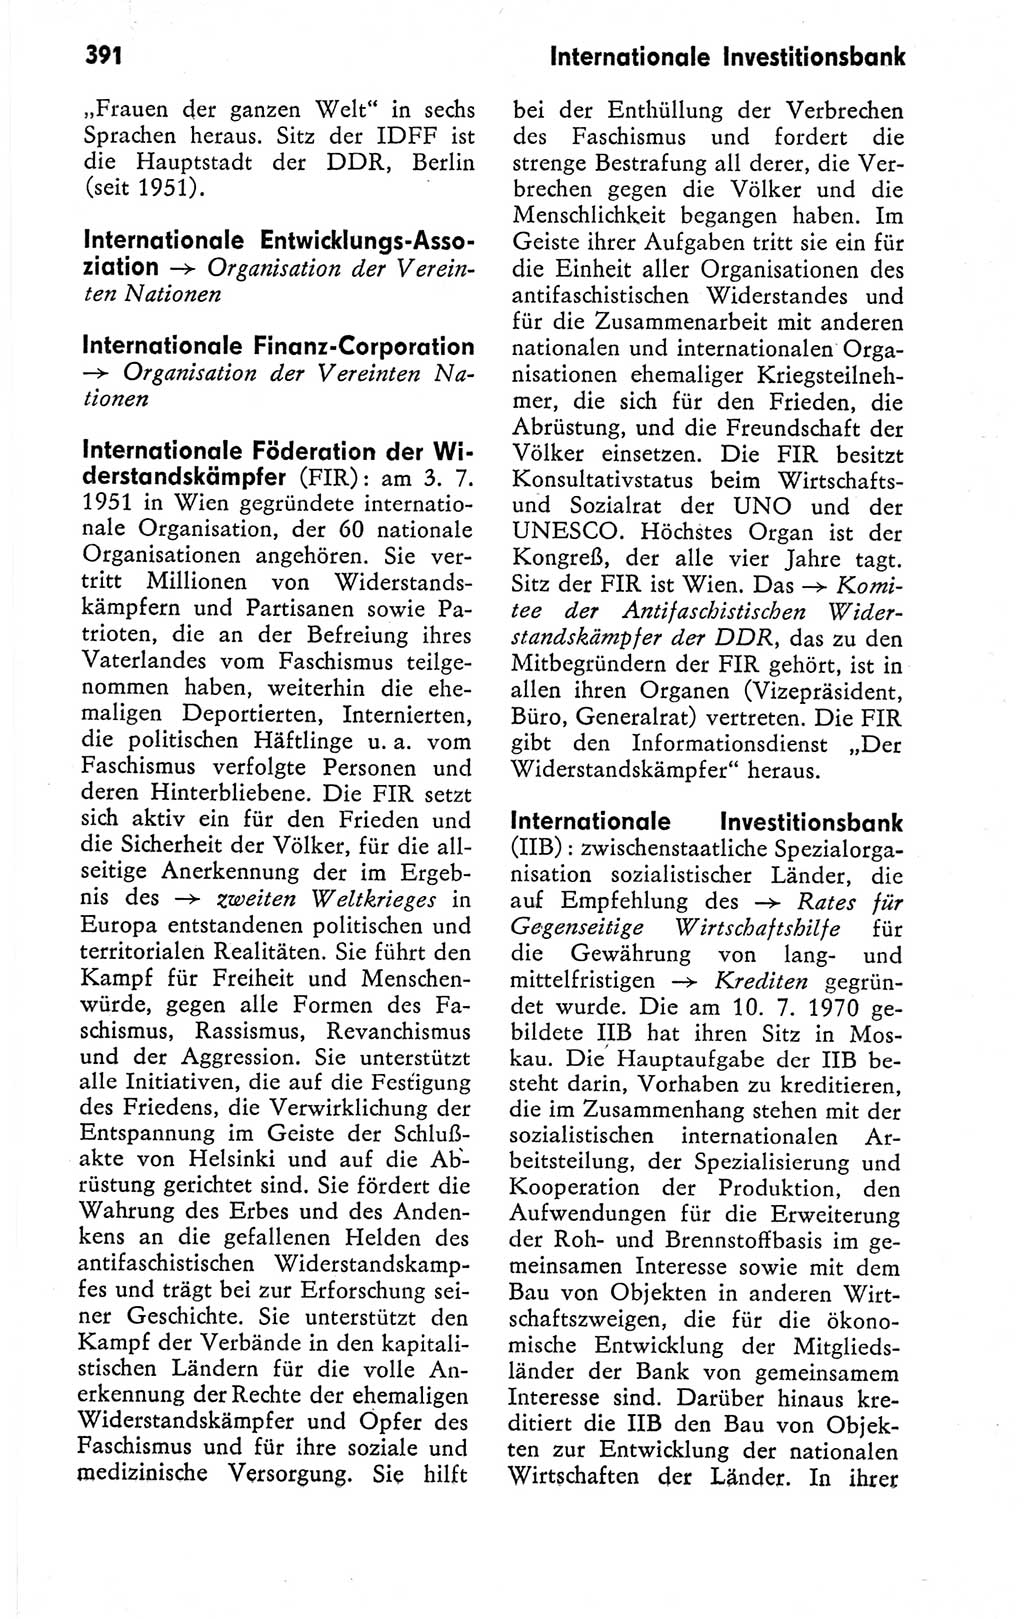 Kleines politisches Wörterbuch [Deutsche Demokratische Republik (DDR)] 1978, Seite 391 (Kl. pol. Wb. DDR 1978, S. 391)